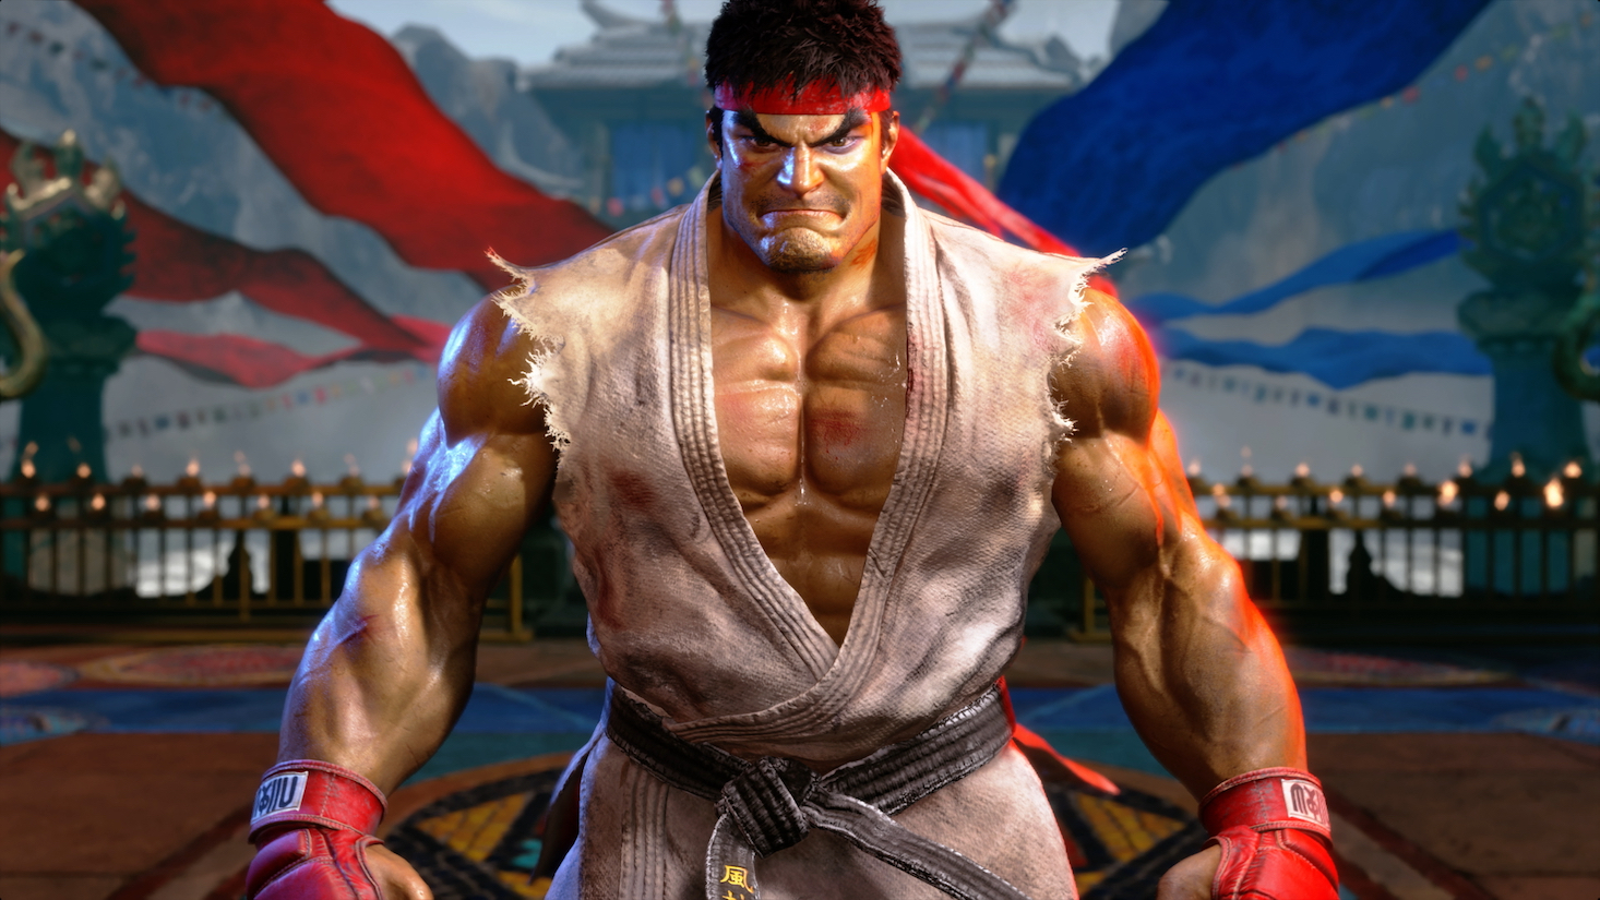 Ken in Street Fighter 6 is not divorced, but he is in pretty bad shape -  Polygon